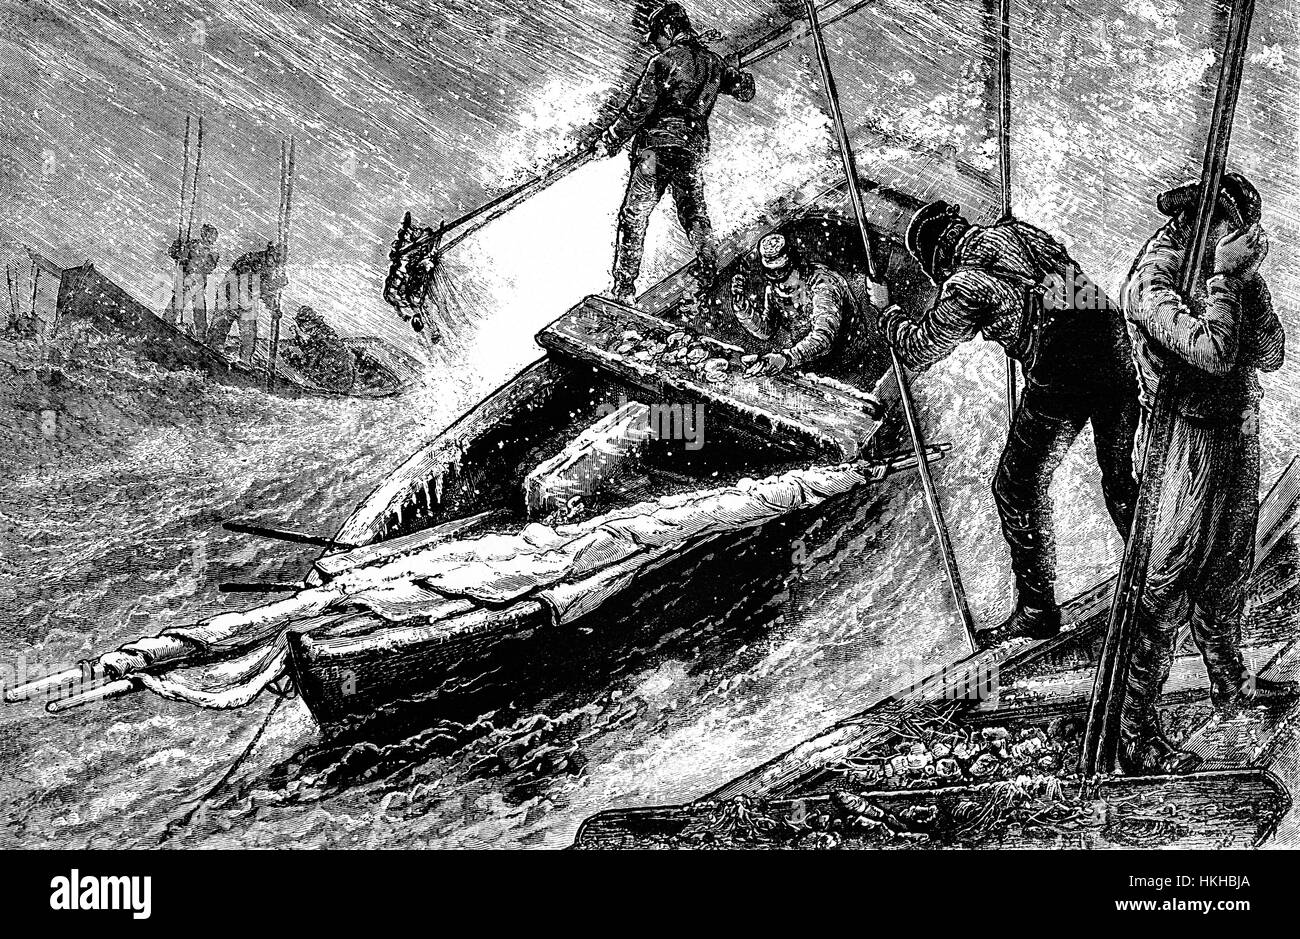 1879: Rechen für Austern in der Chesapeake Bay in kleine Ruderboote; die Zange lag zwischen 7 und 24 Metern Länge und sah aus wie zwei Garten-Rechen mit sehr langen Henkeln, mit der Zahnseite jeder Rechen einander zugewandt. Maryland und Virginia Staaten, Vereinigte Staaten von Amerika Stockfoto